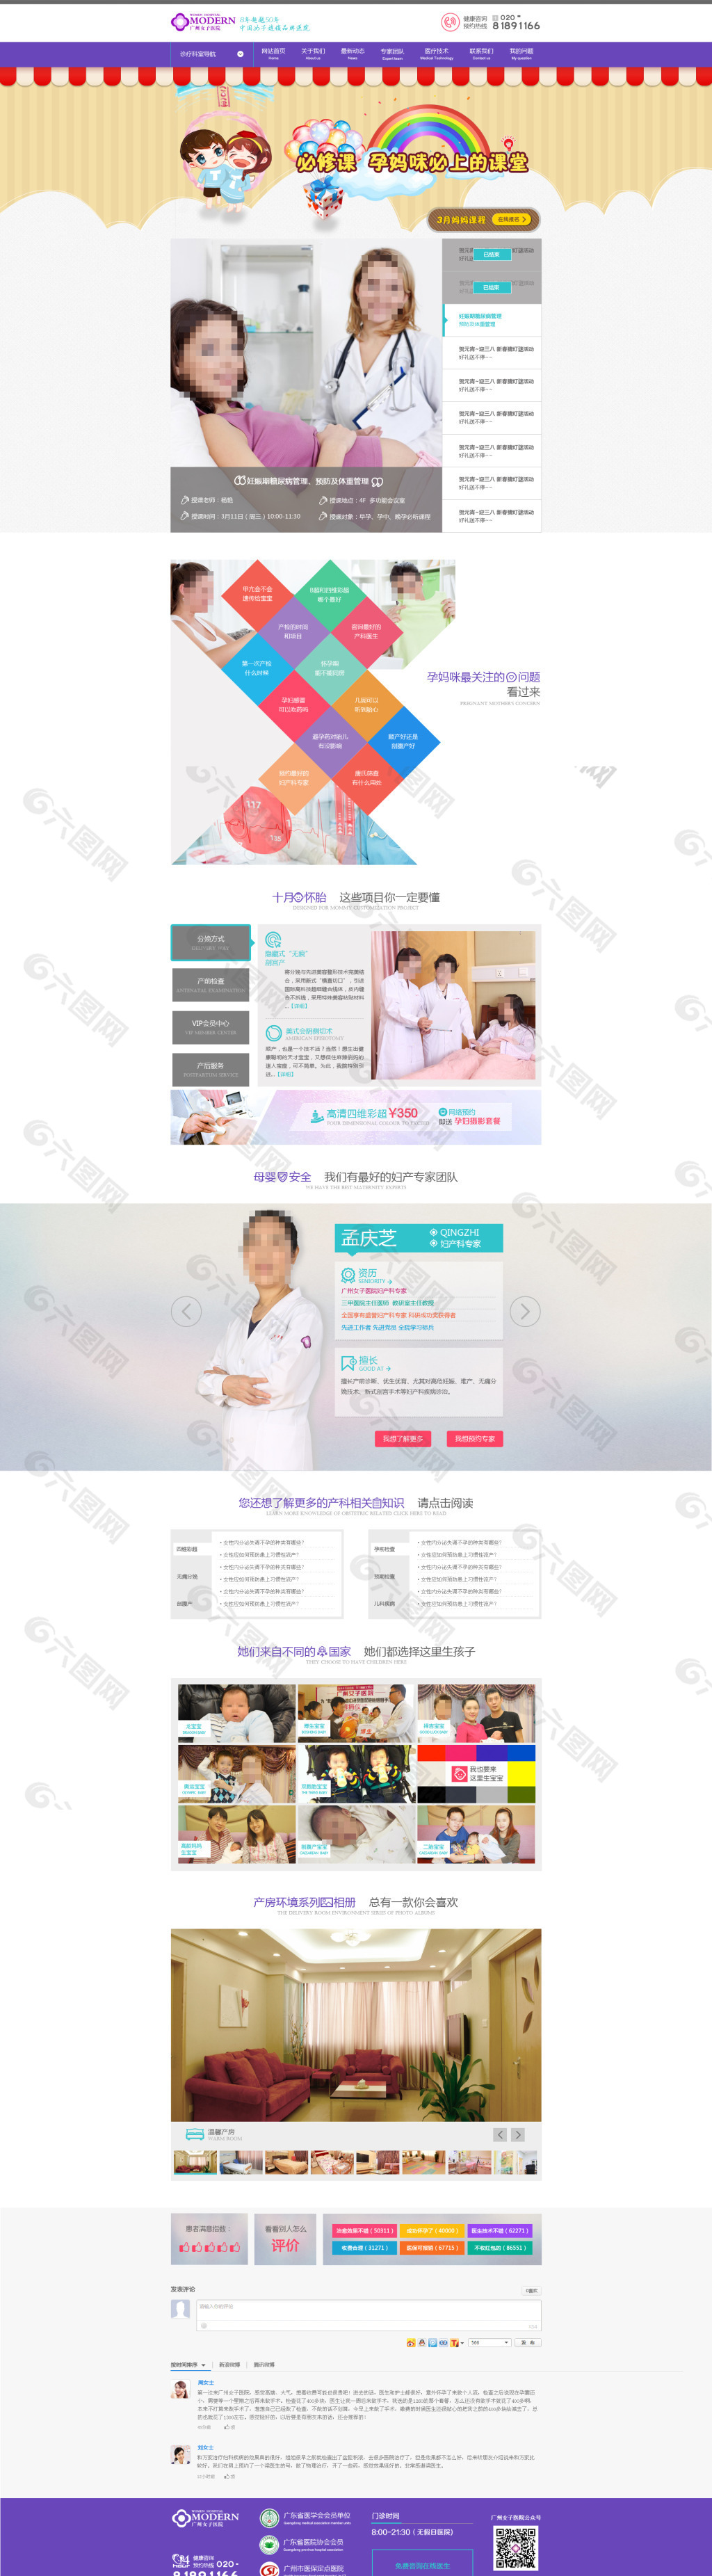 惠州网二级域名产科频道页